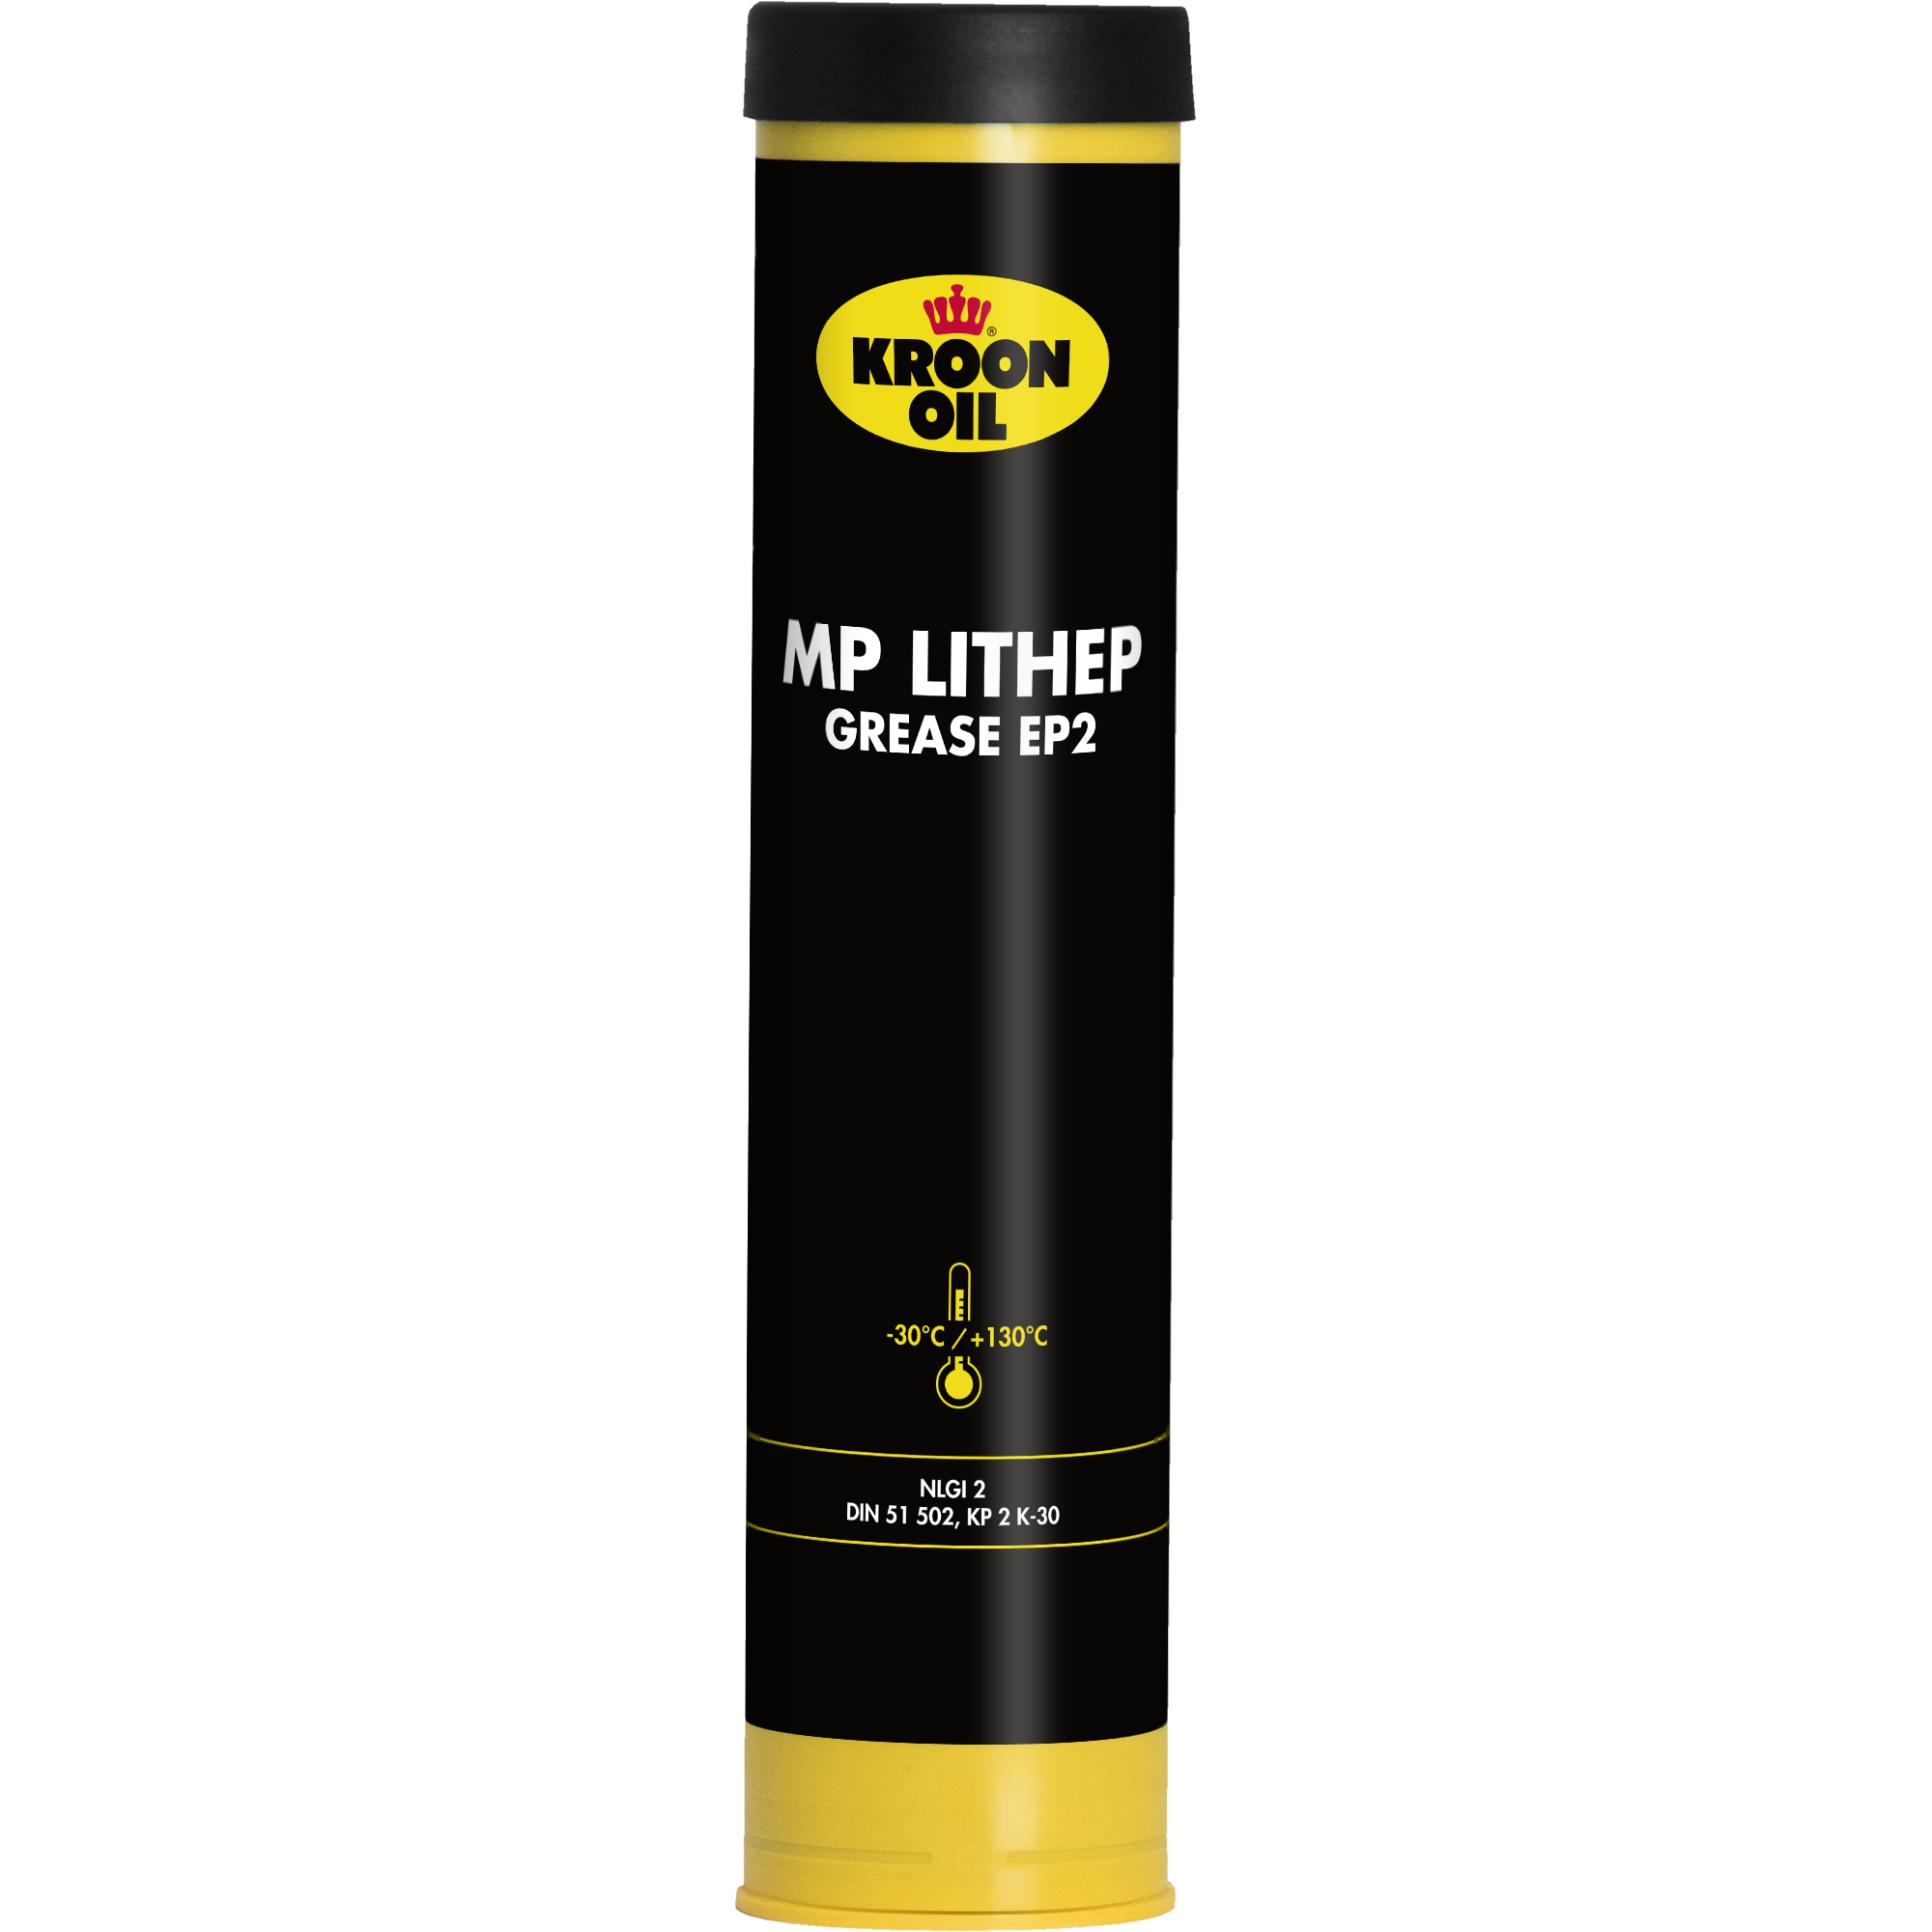 03004-400GR MP Lithep Grease EP 2 is een multi purpose vet gebaseerd op goed geraffineerde hoog visceuze basisoliën met een lithiumzeep als verdikkingsmiddel.